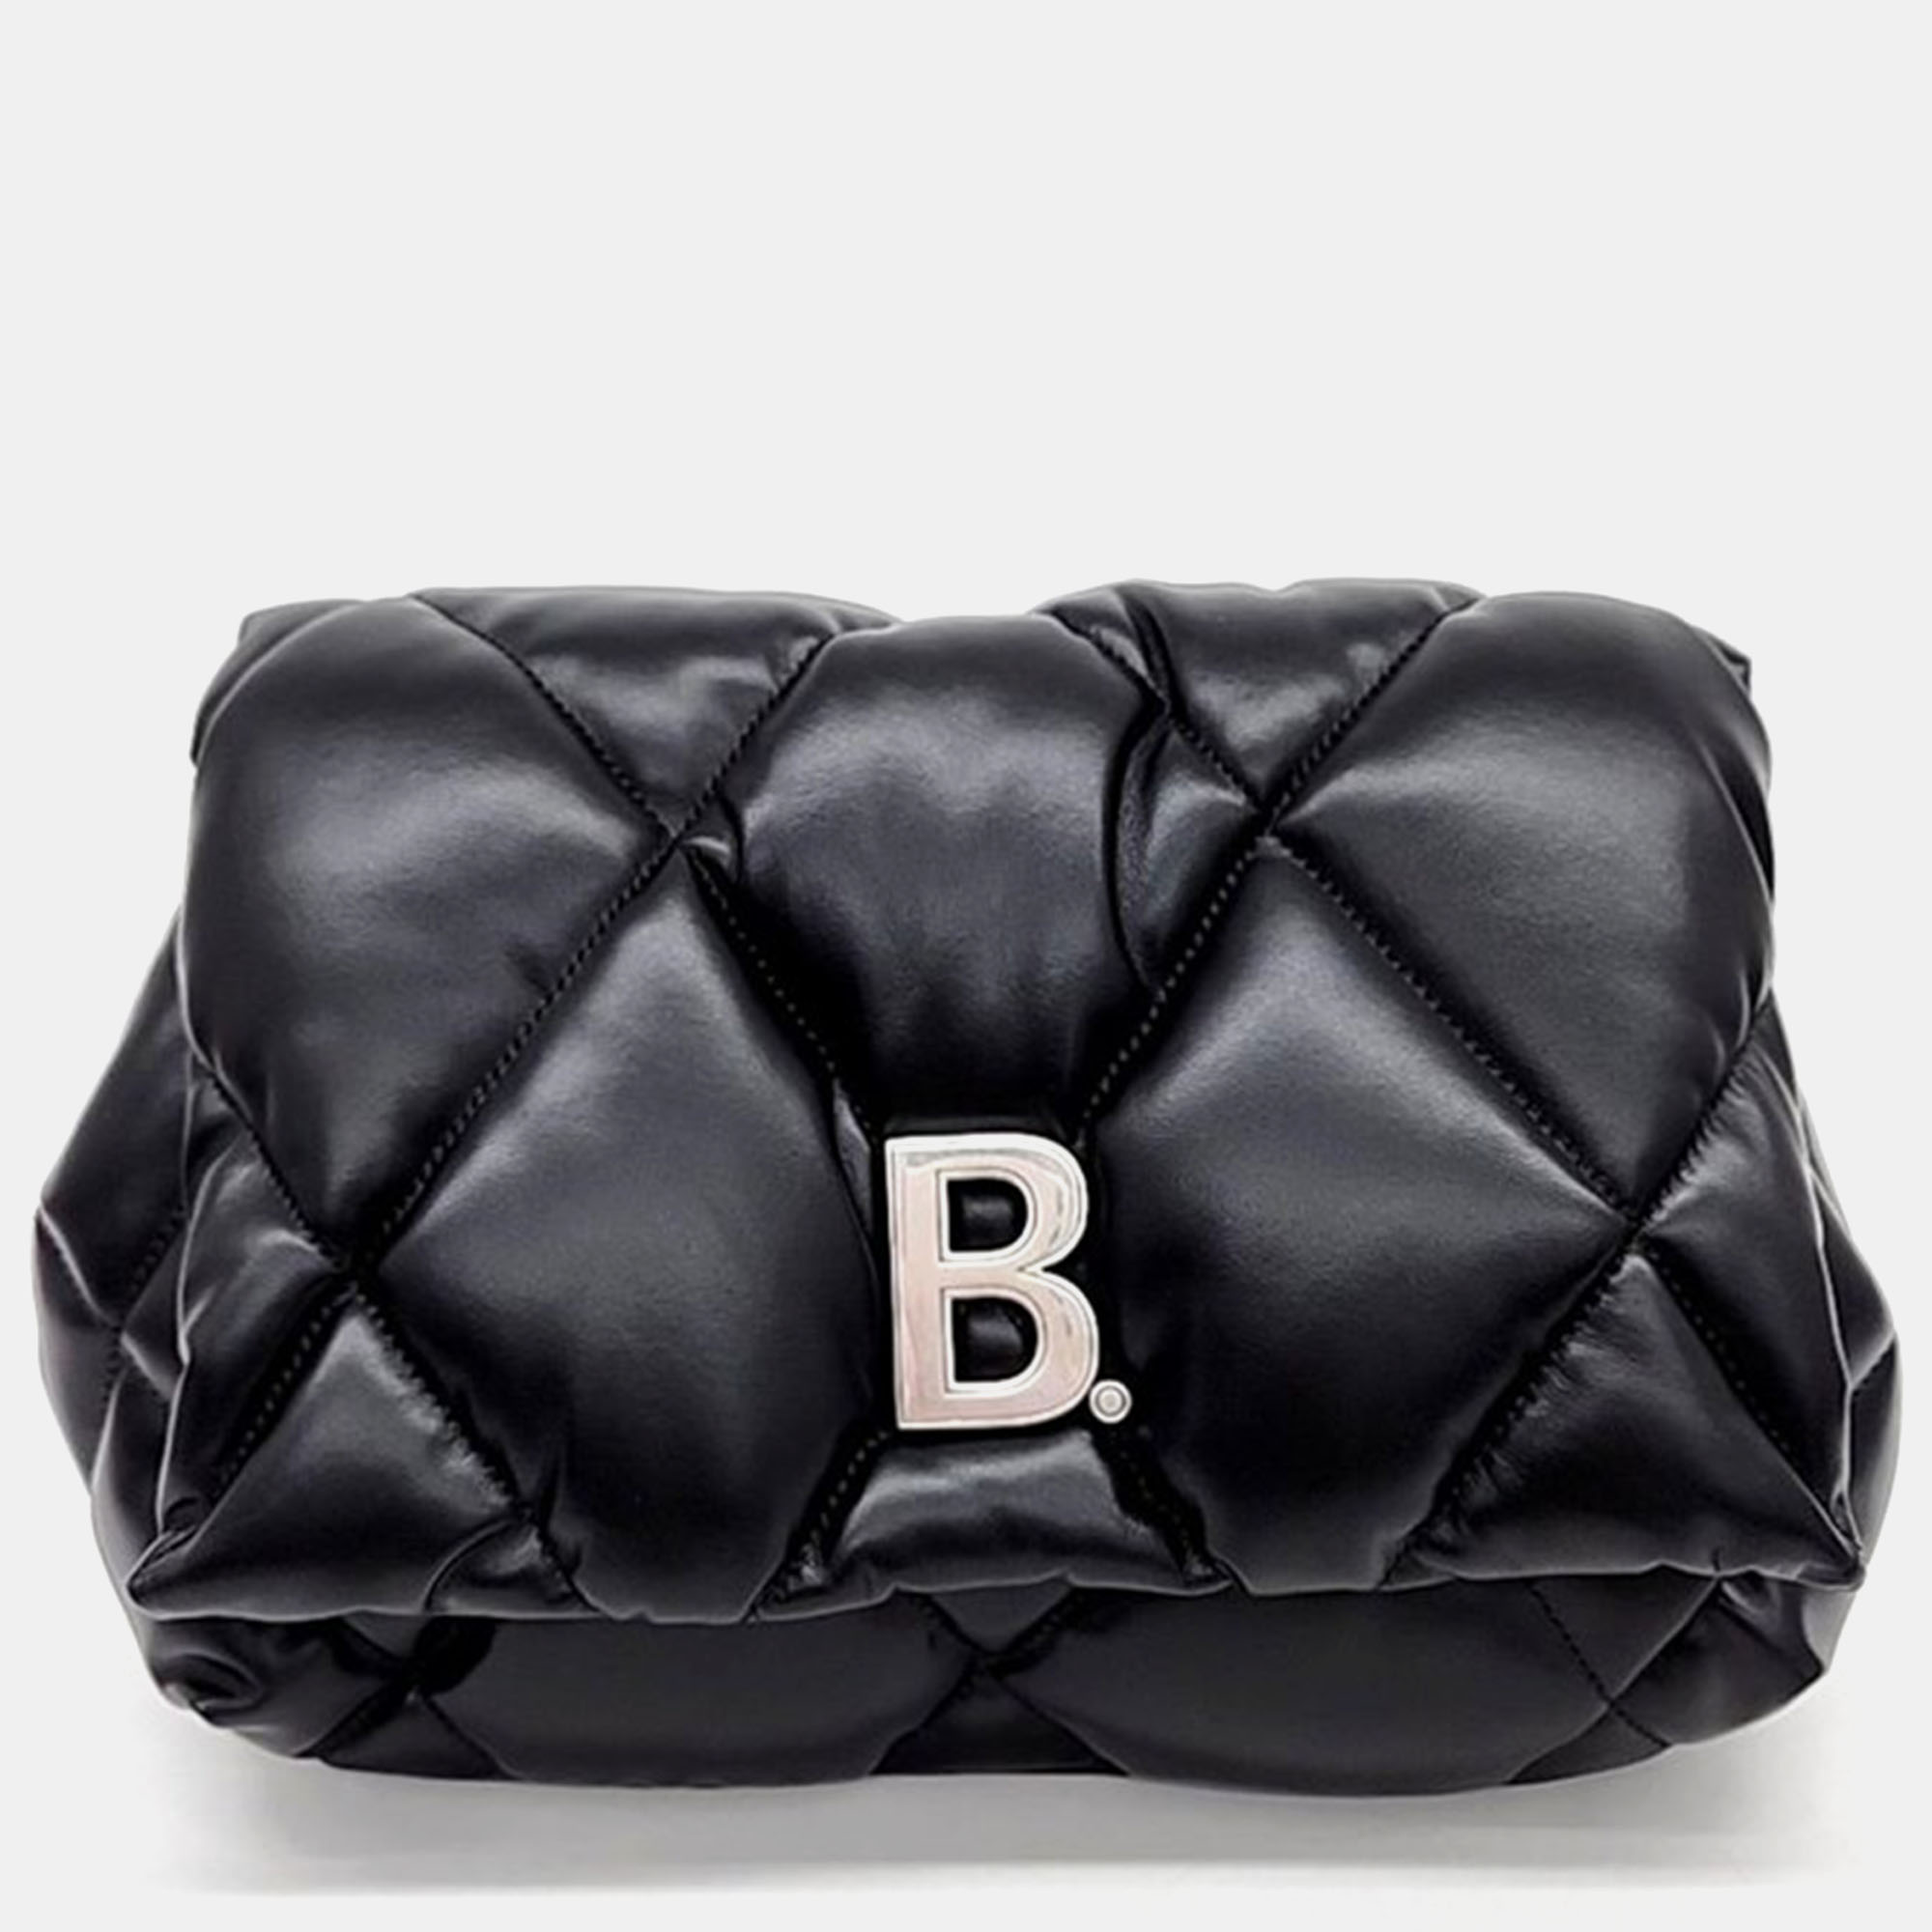 Balenciaga black b logo puffy clutch bag